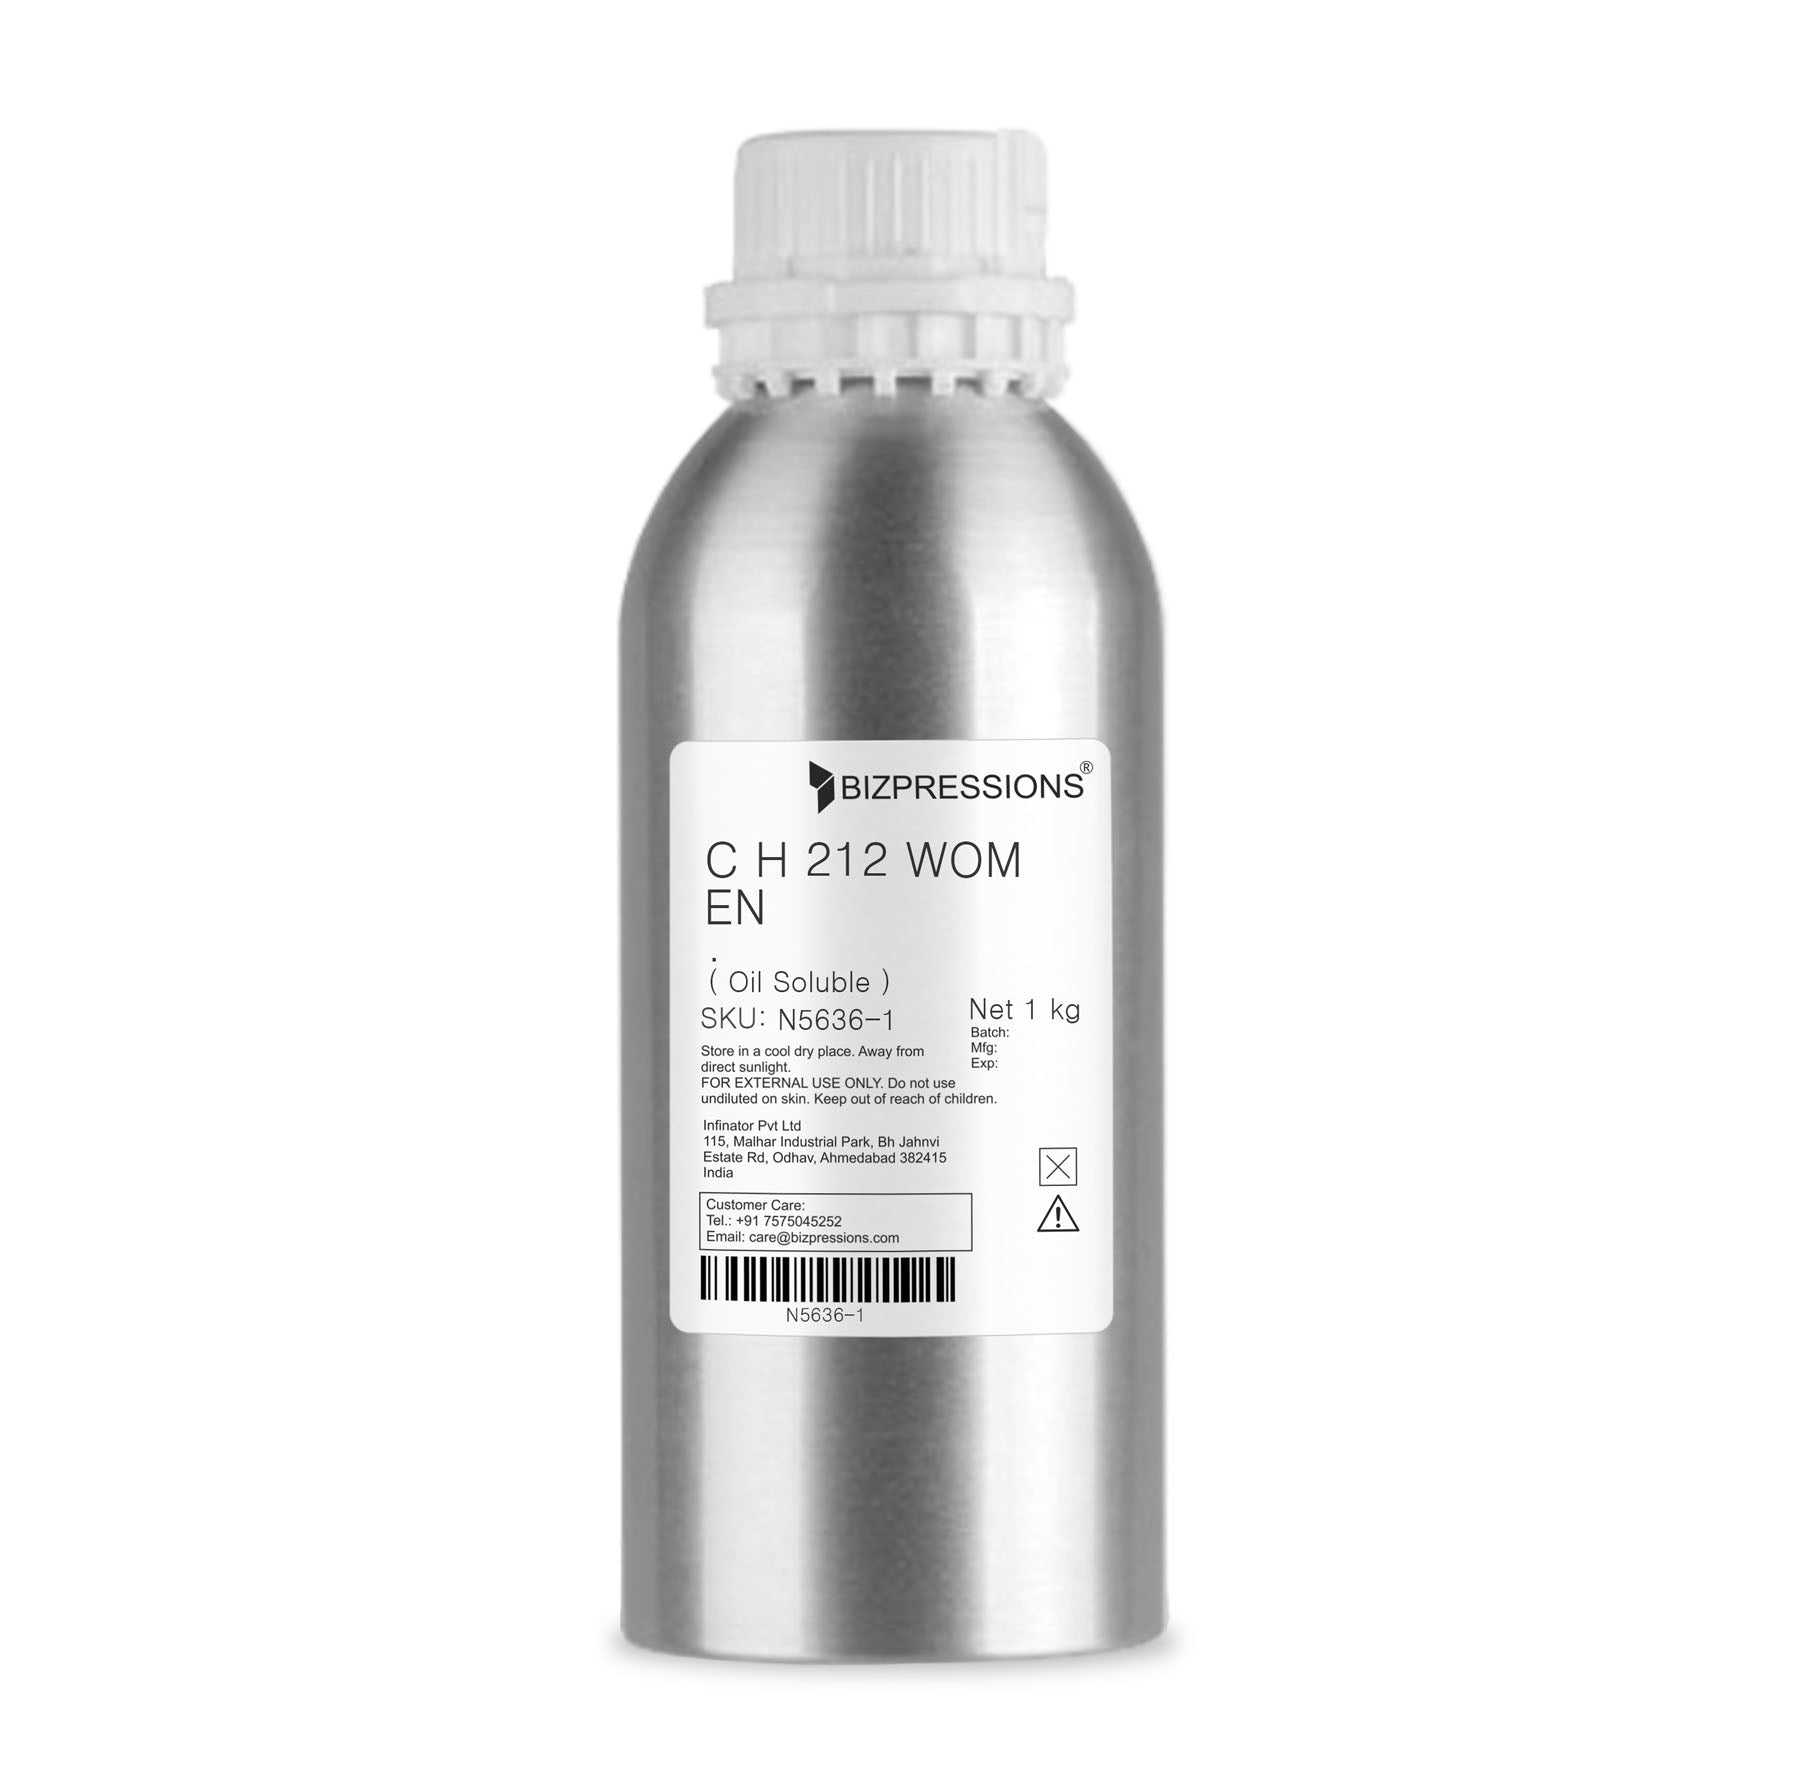 C H 212 WOMEN - Fragrance ( Oil Soluble ) - 1 kg